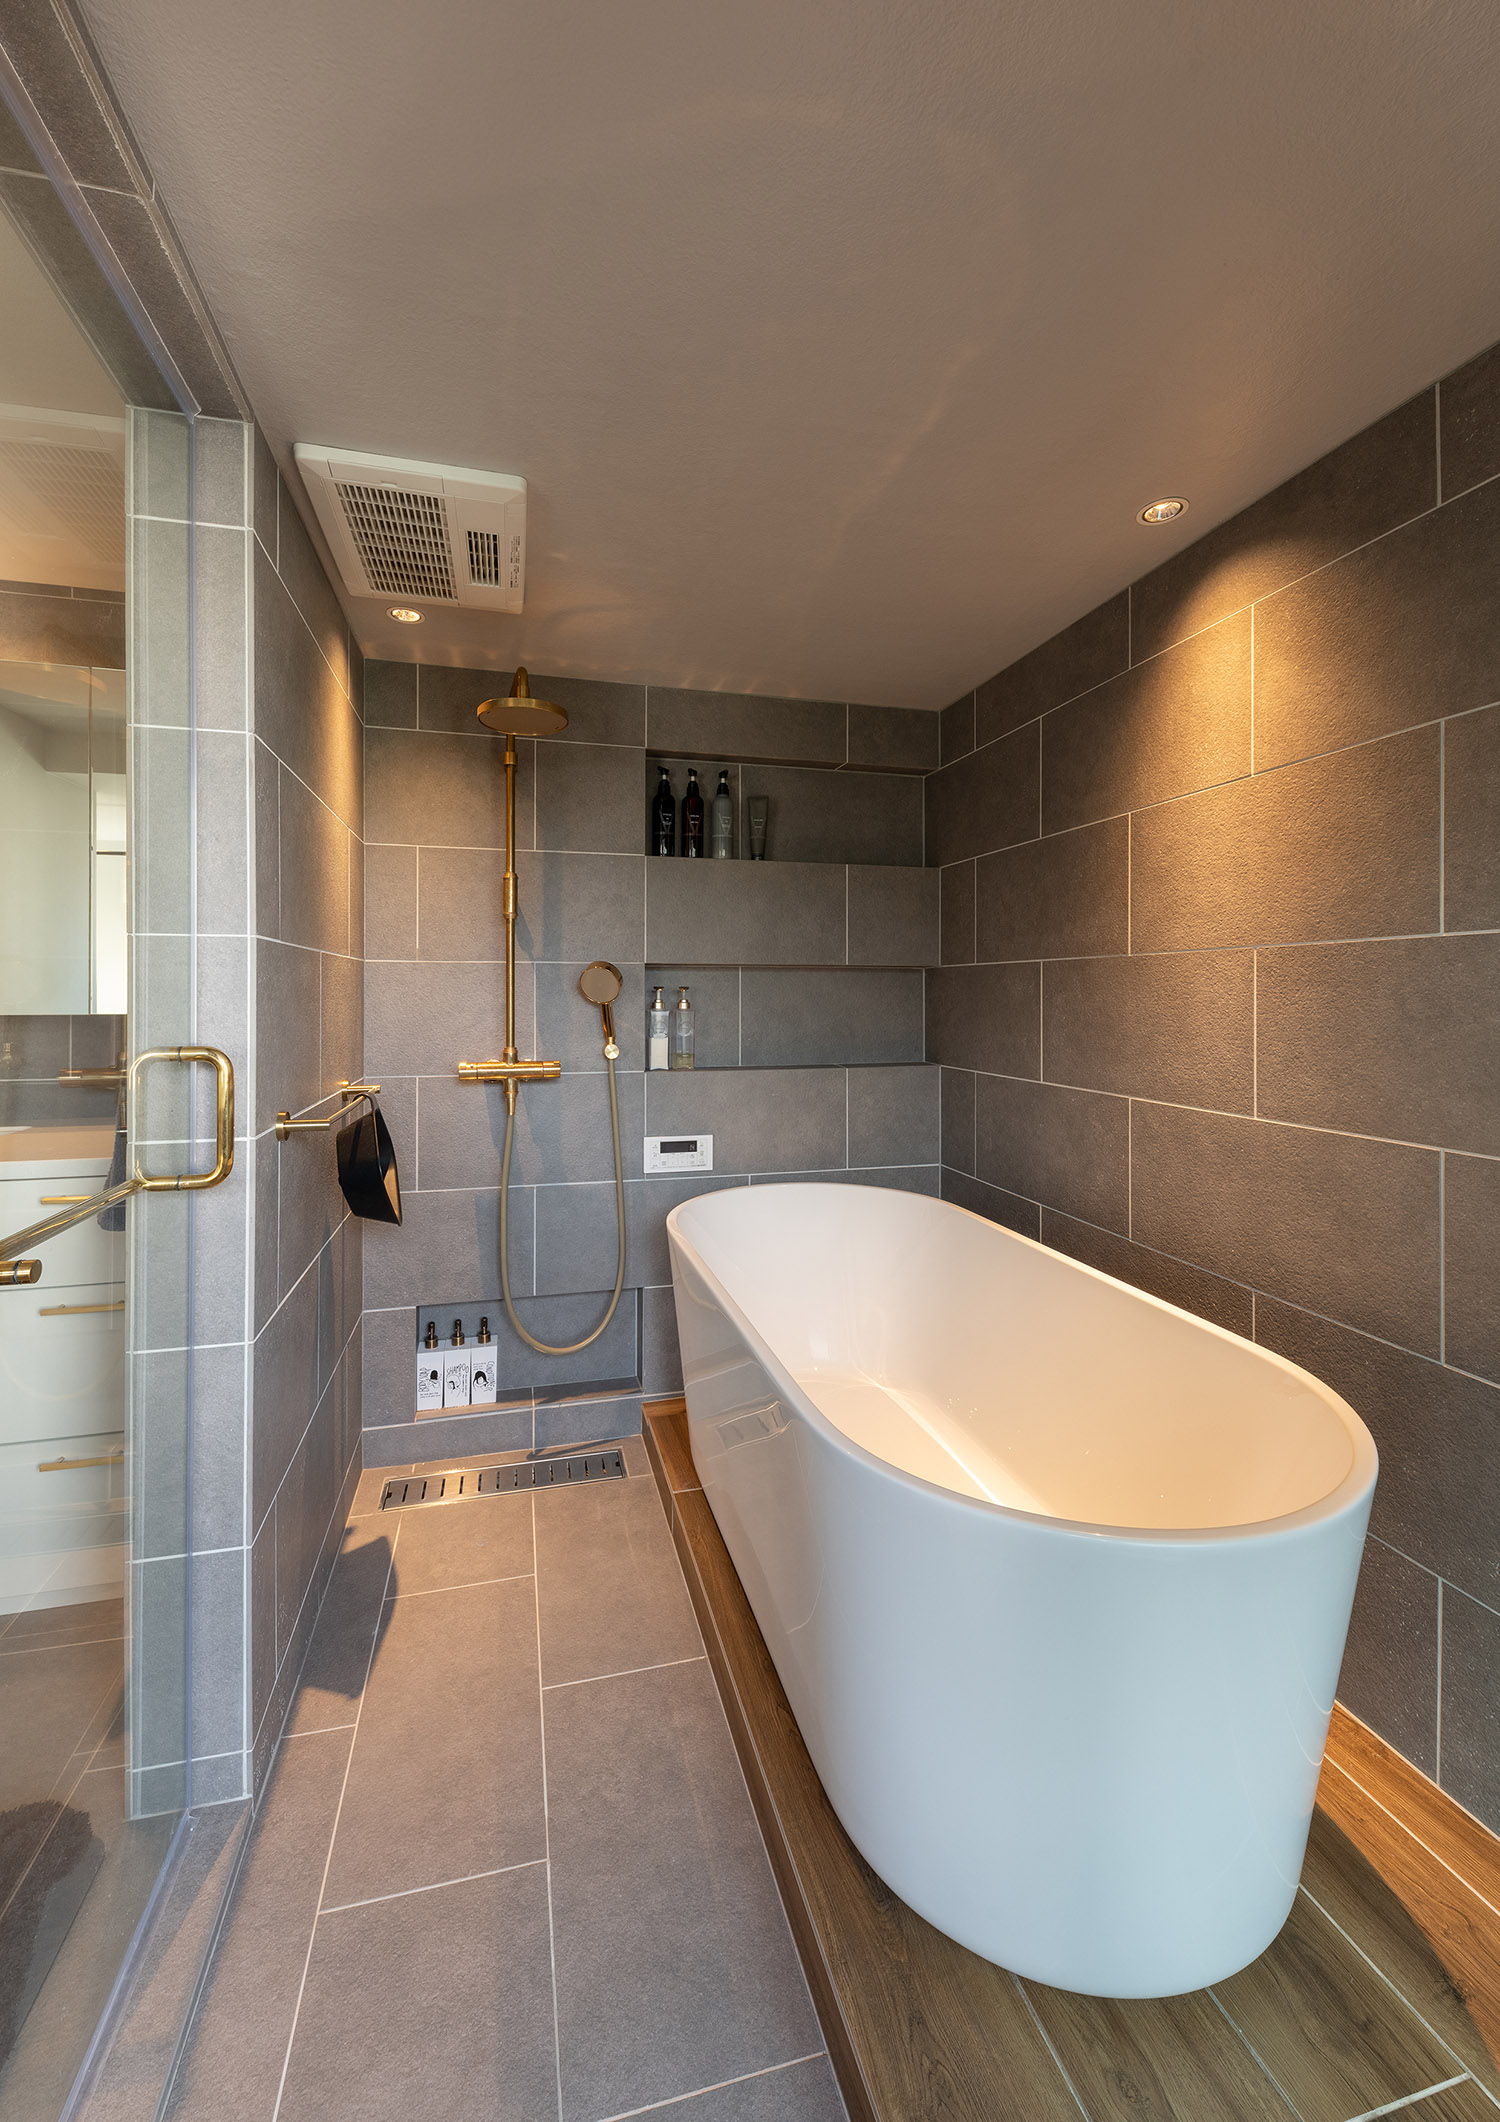 グレーの壁で洗面所との繋がりが感じられる丸い浴槽がある在来浴室・デザイン住宅